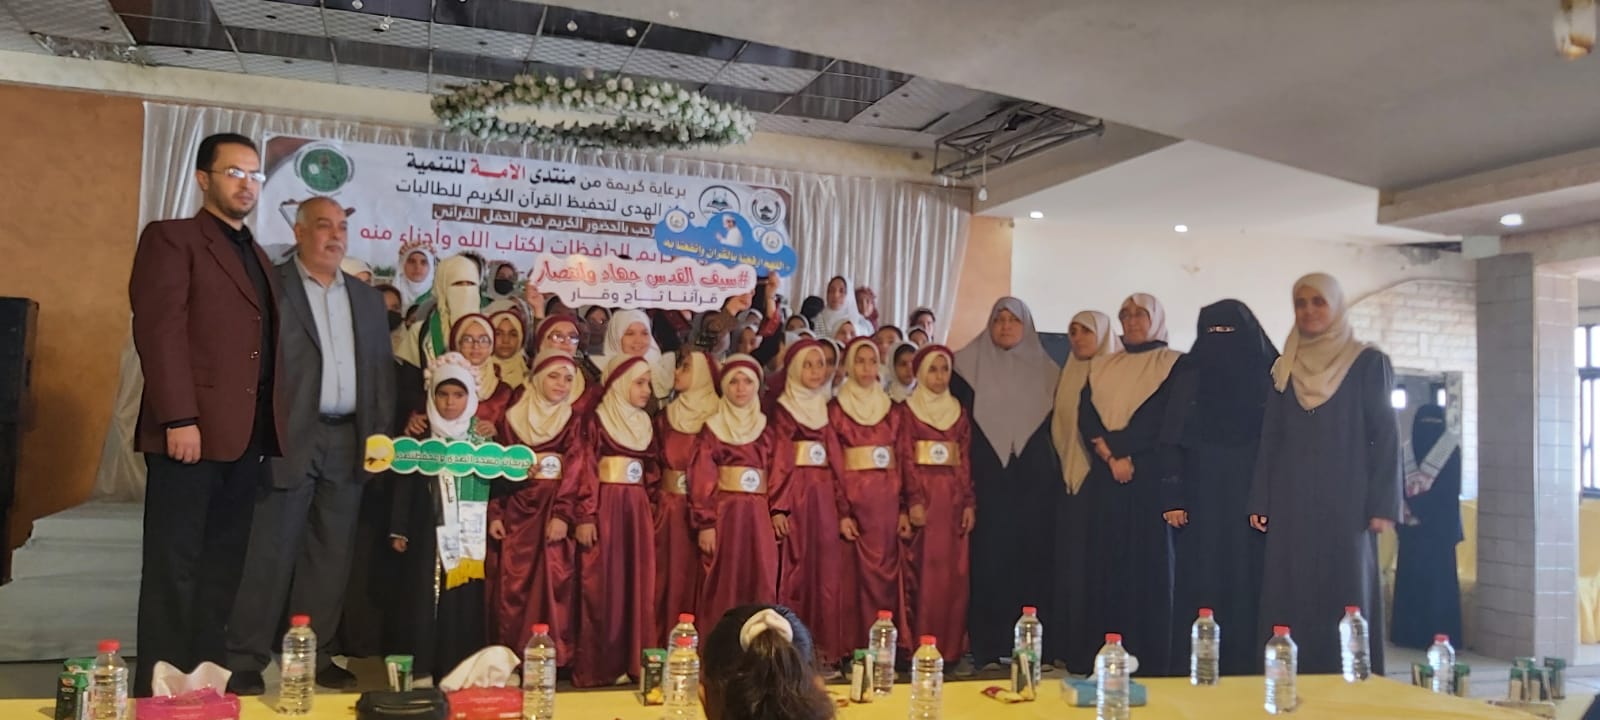 غزة: مركز الهدى ينظم حفلا لتكريم الطالبات الحافظات للقرآن الكريم (صور)